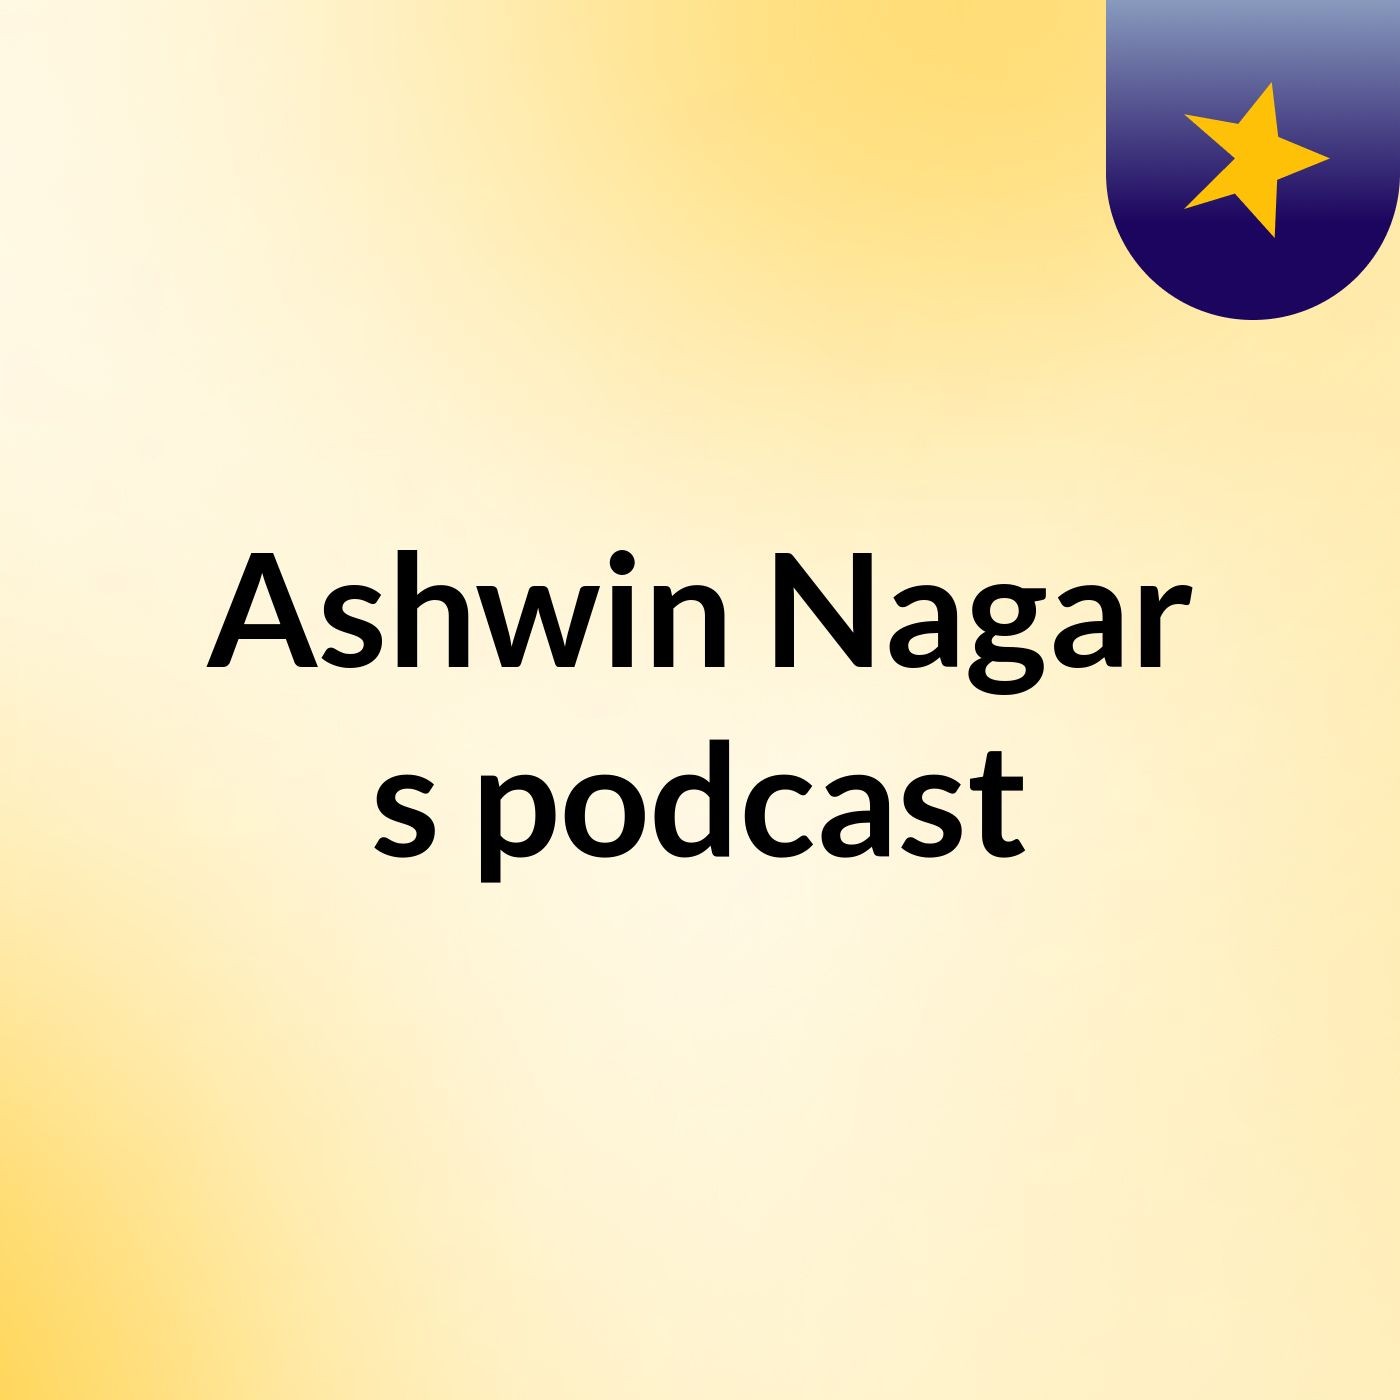 Ashwin Nagar's podcast